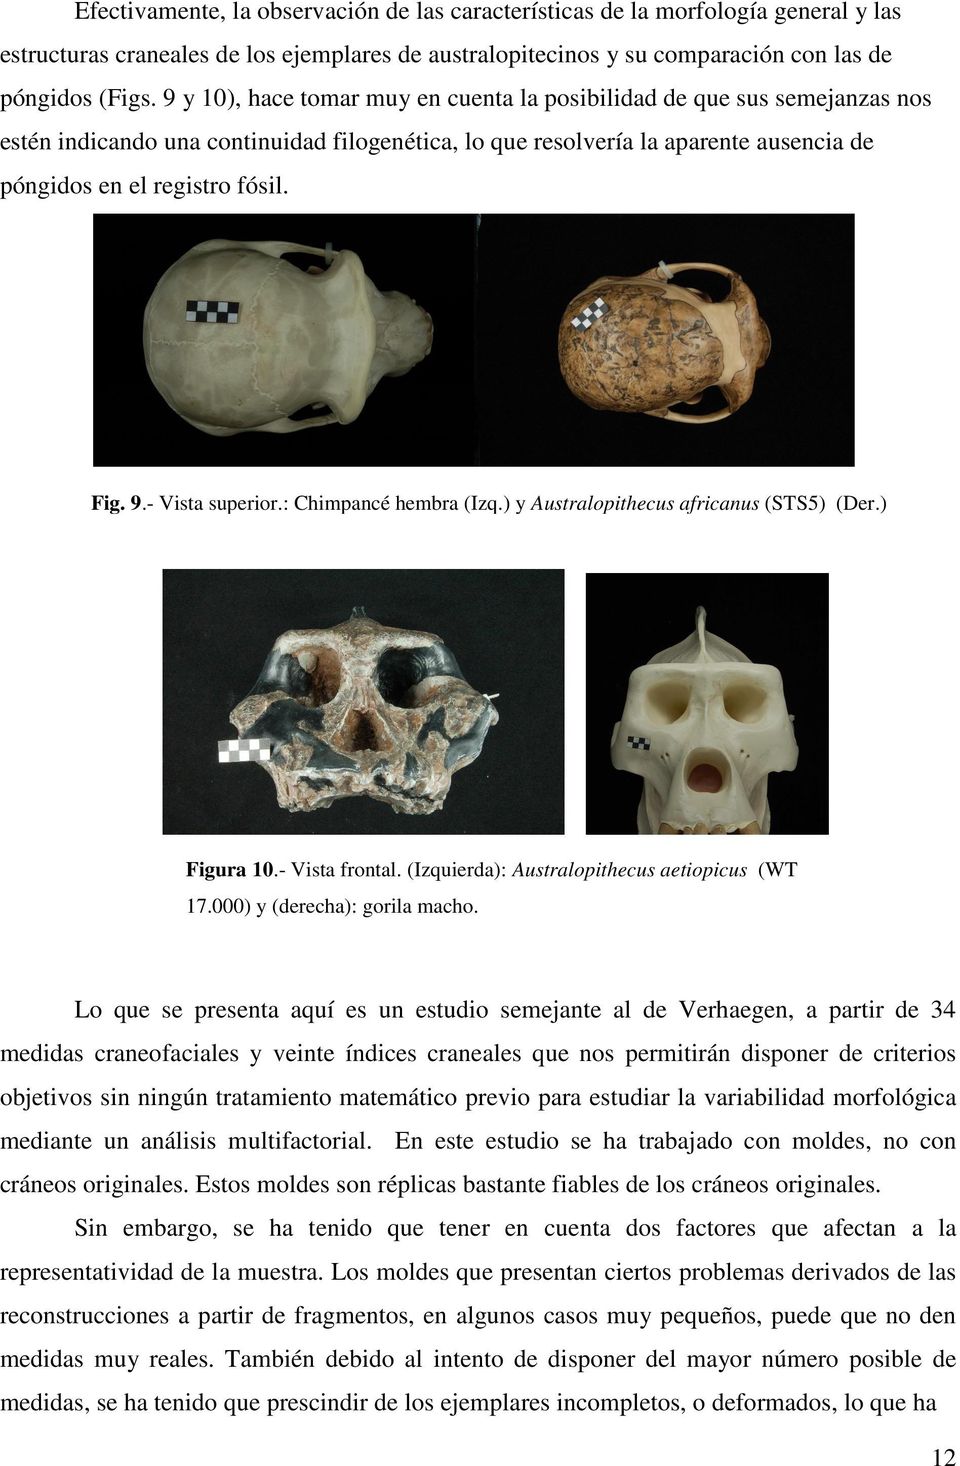 9.- Vista superior.: Chimpancé hembra (Izq.) y Australopithecus africanus (STS5) (Der.) Figura 10.- Vista frontal. (Izquierda): Australopithecus aetiopicus (WT 17.000) y (derecha): gorila macho.